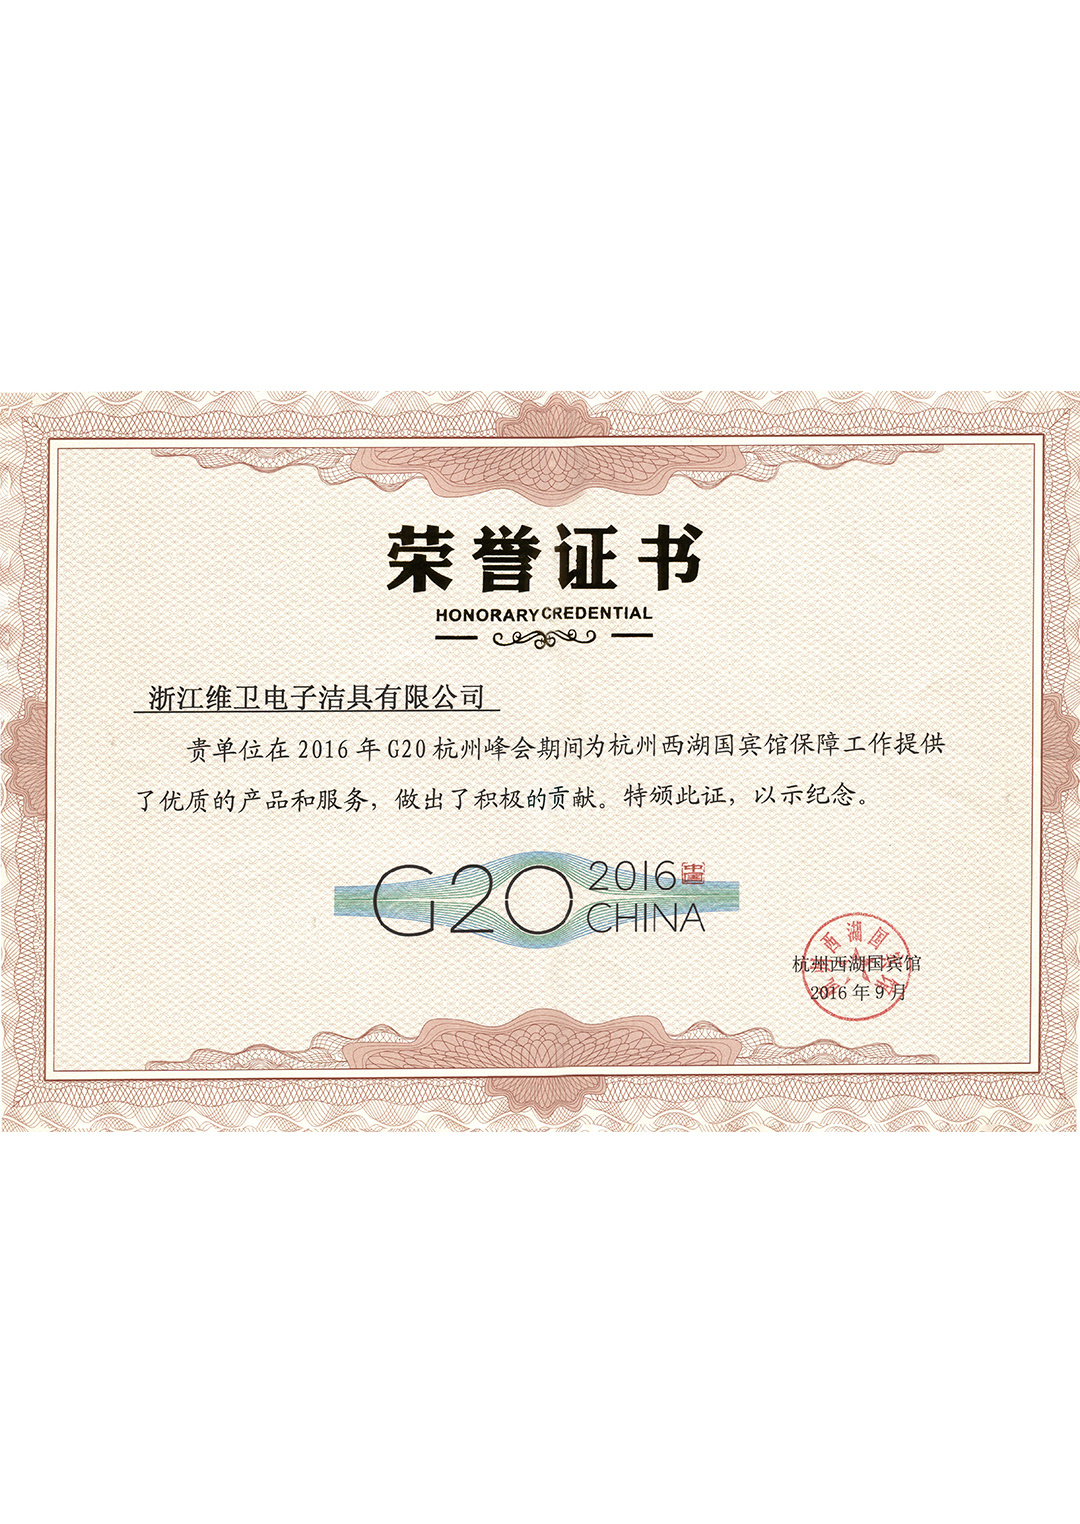 G20峰會獎狀證書